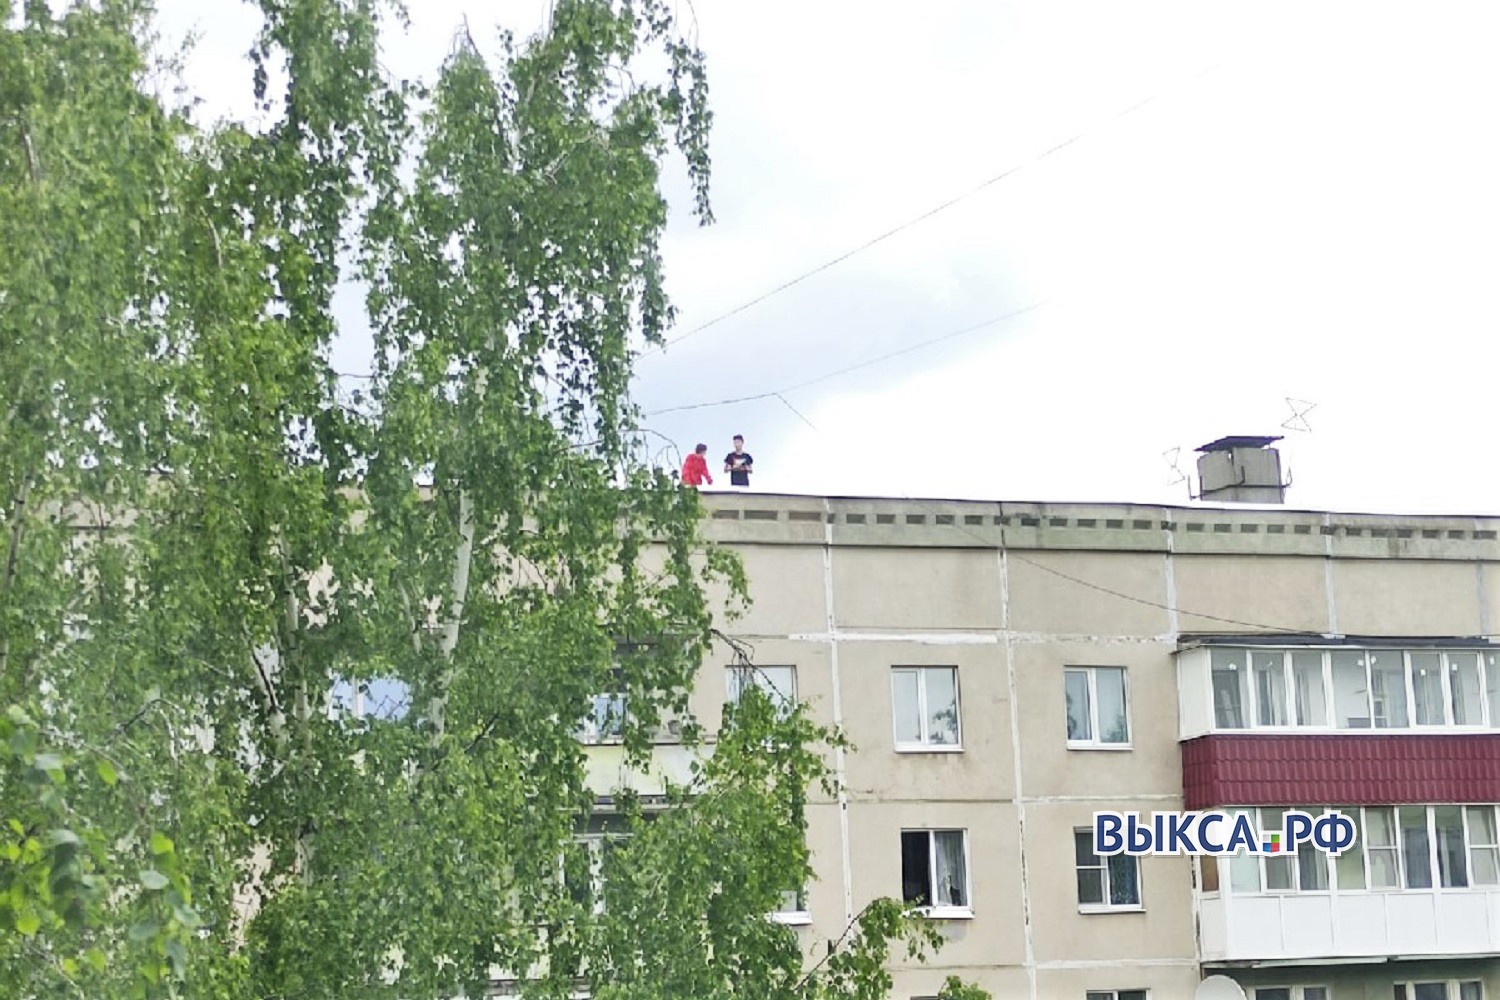 Школьники, которые гуляли по крыше